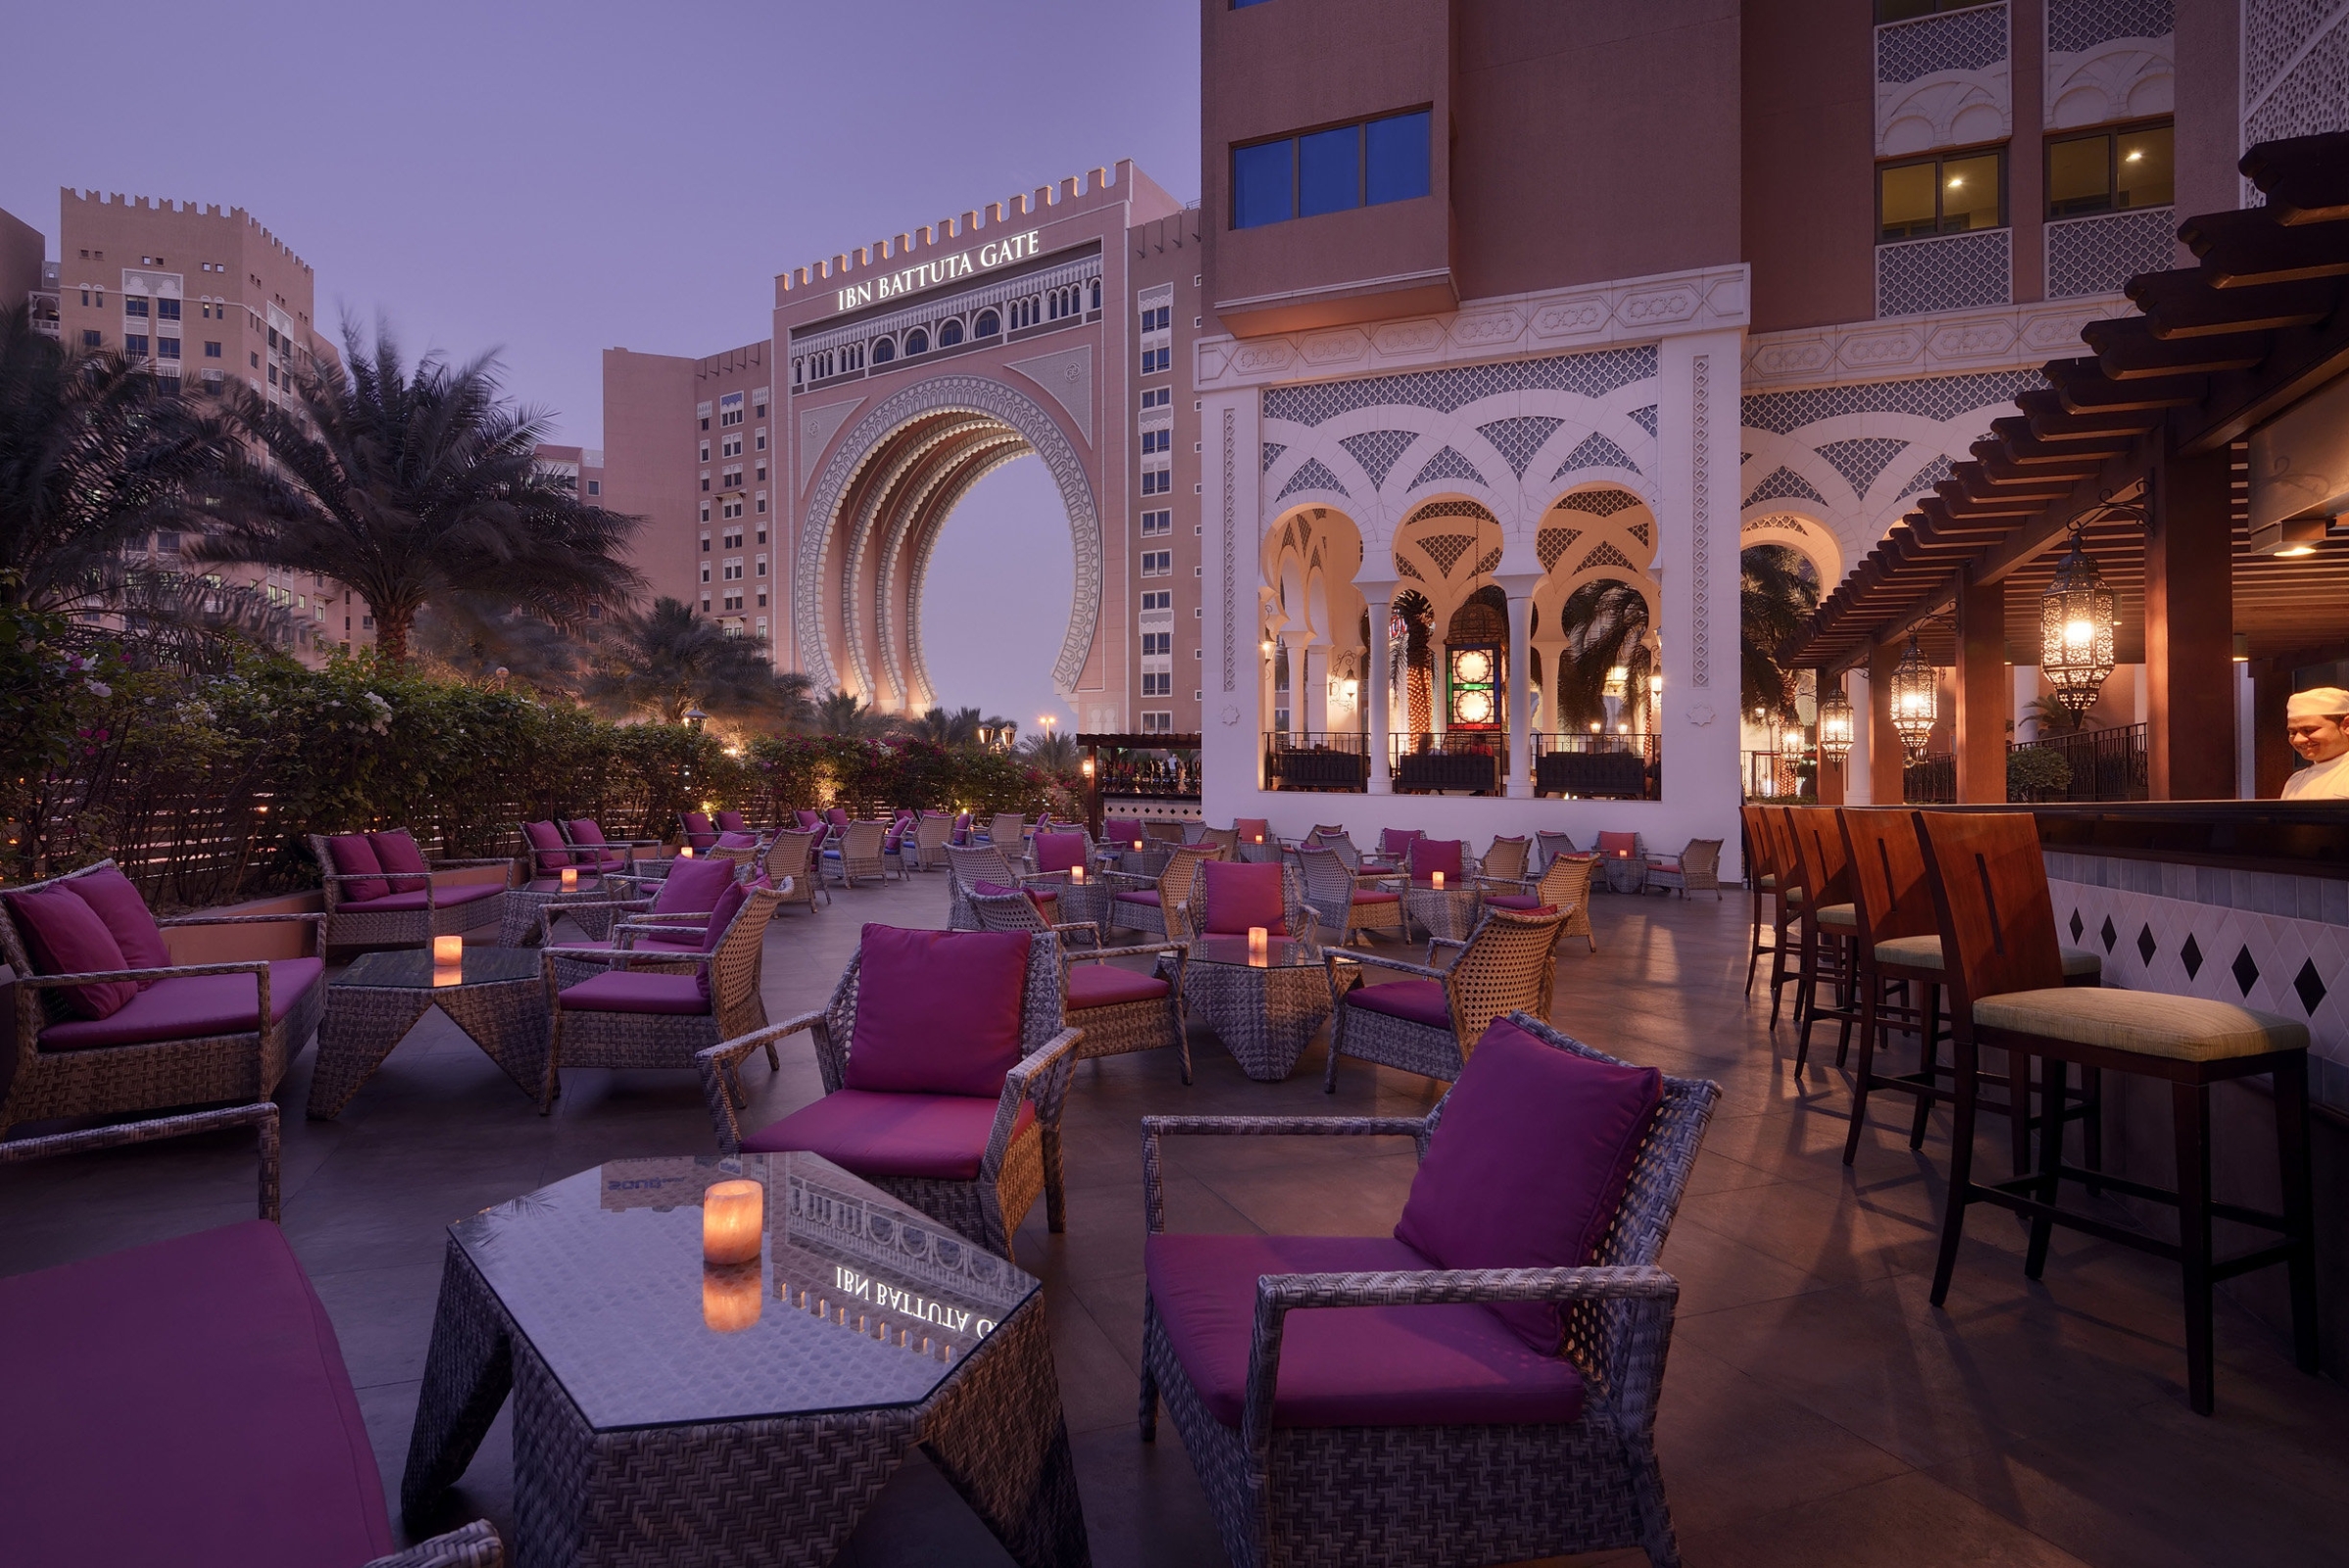 Oaks IBN Battuta Gate Hotel Dubai